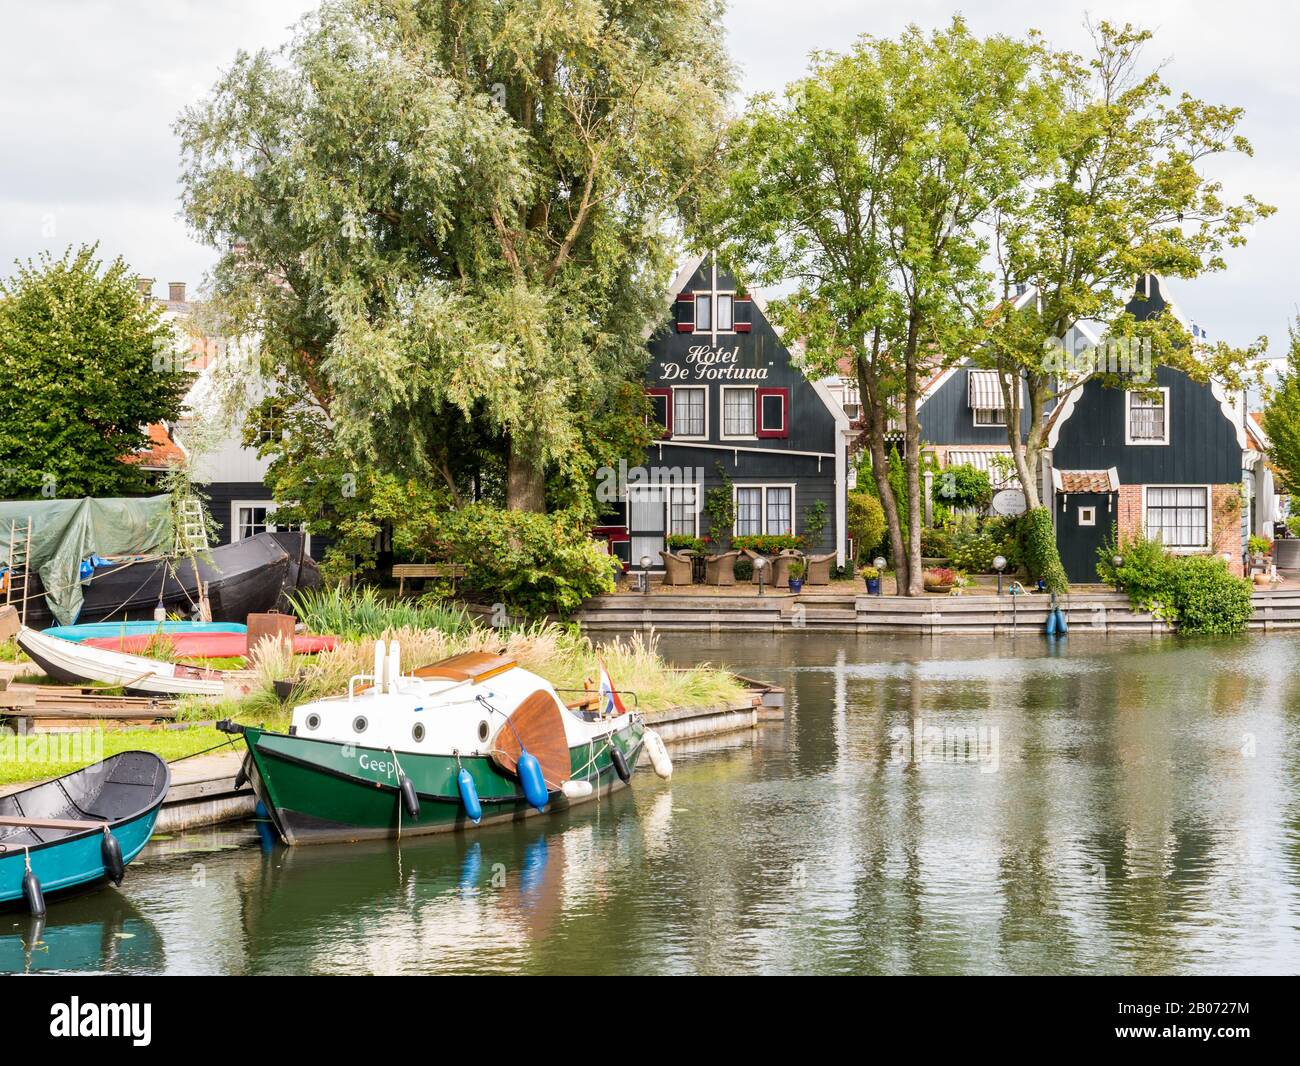 Antiguo astillero y casas a lo largo del canal en Edam, Noord-Holland, países Bajos Foto de stock